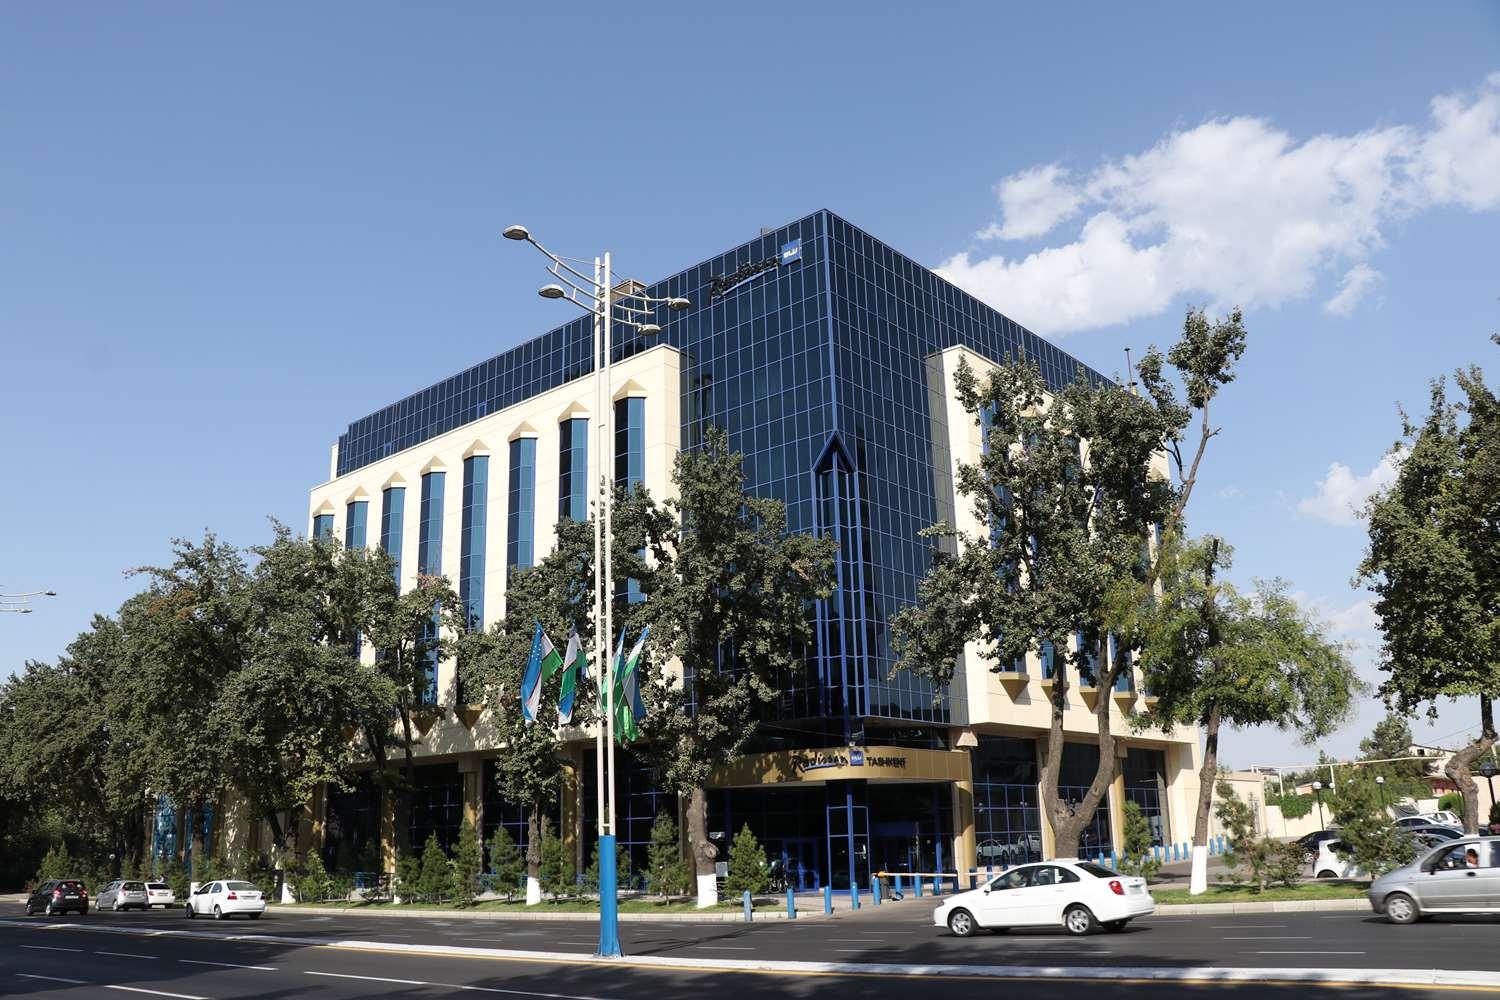 Radisson Blu Hotel, Tashkent in Tashkent, UZ